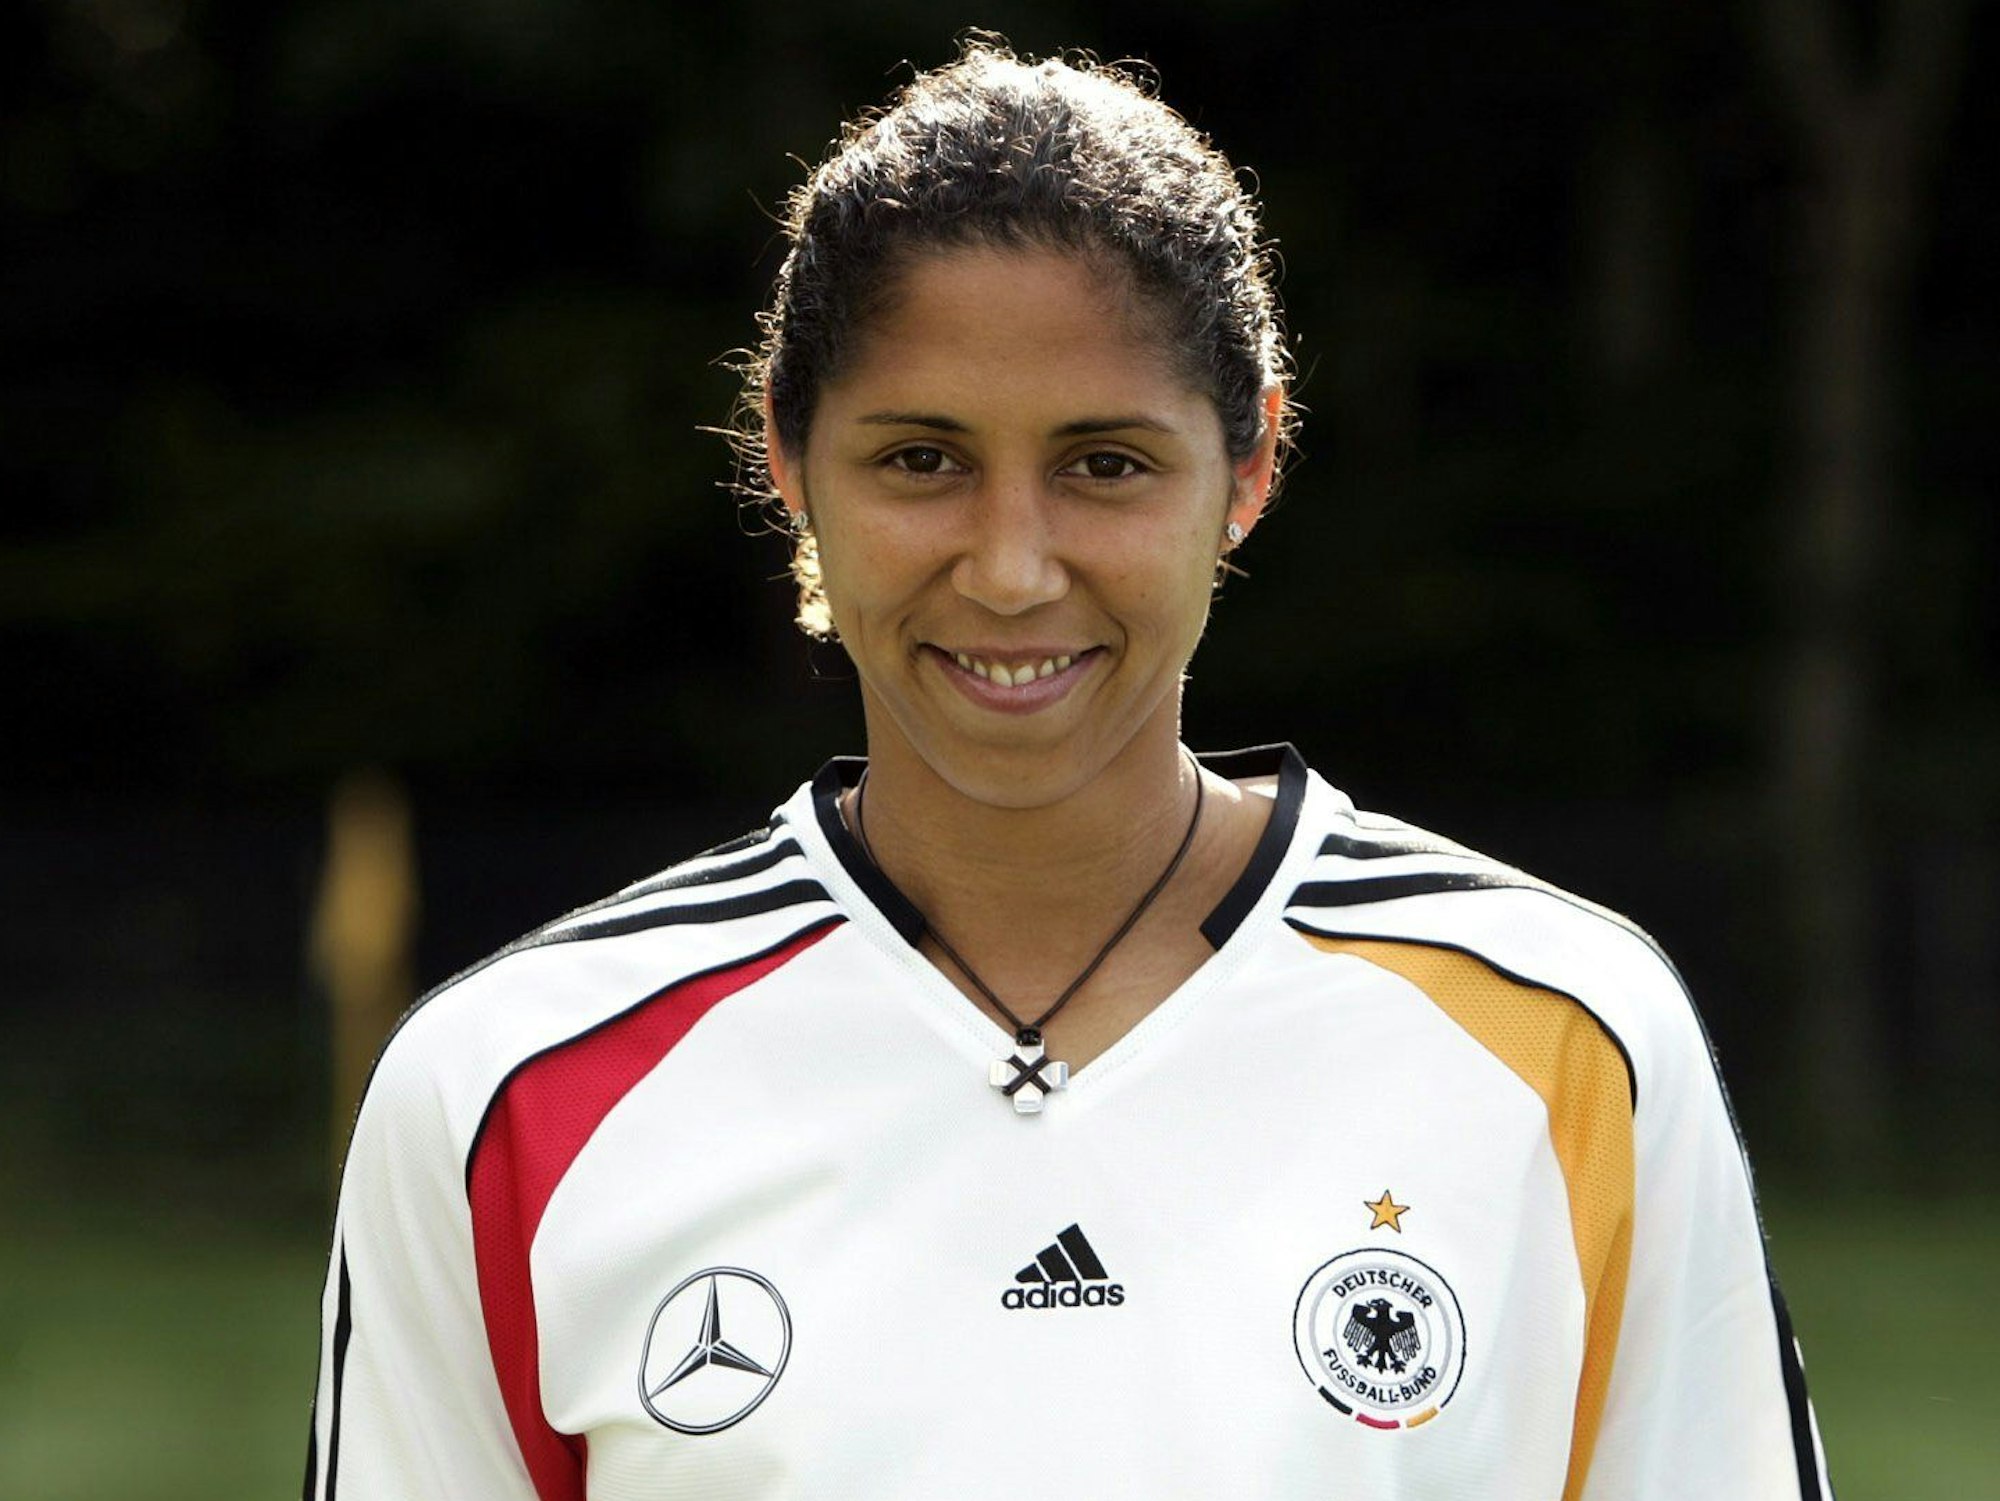 Abwehrspielerin Steffi Jones aufgenommen beim Fototermin der Frauen-Fußballnationalmannschaft in Heusenstamm bei Offenbach.